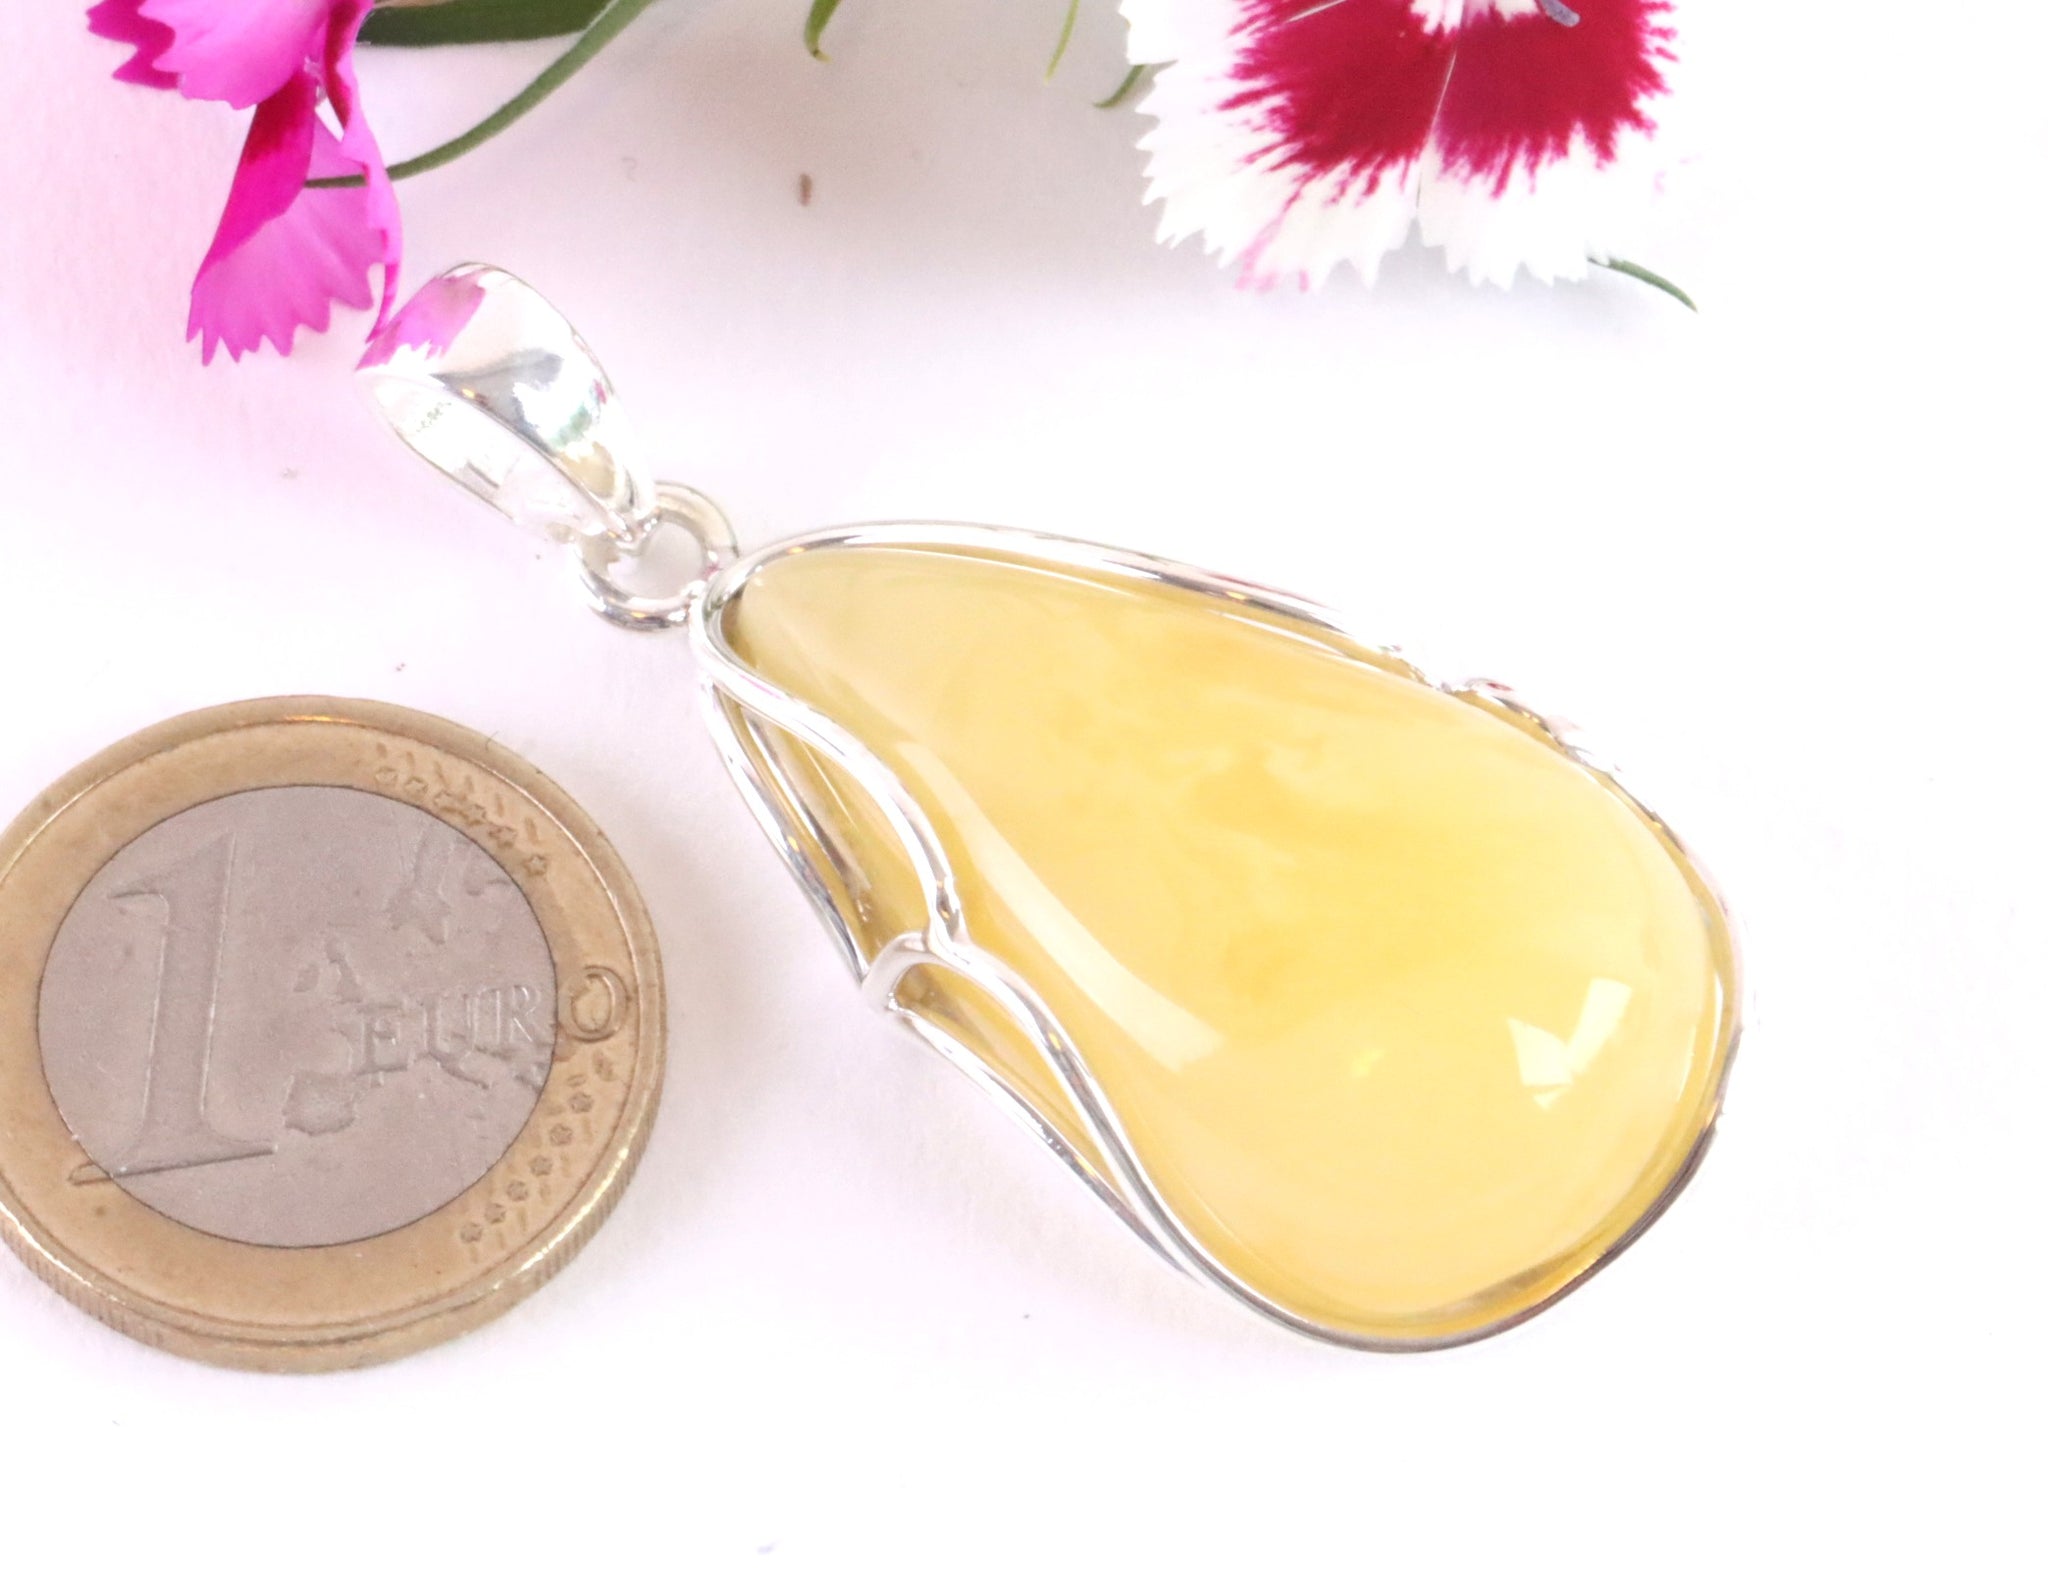 100% Handmade Butter Amber Gemstone Pendant Gift